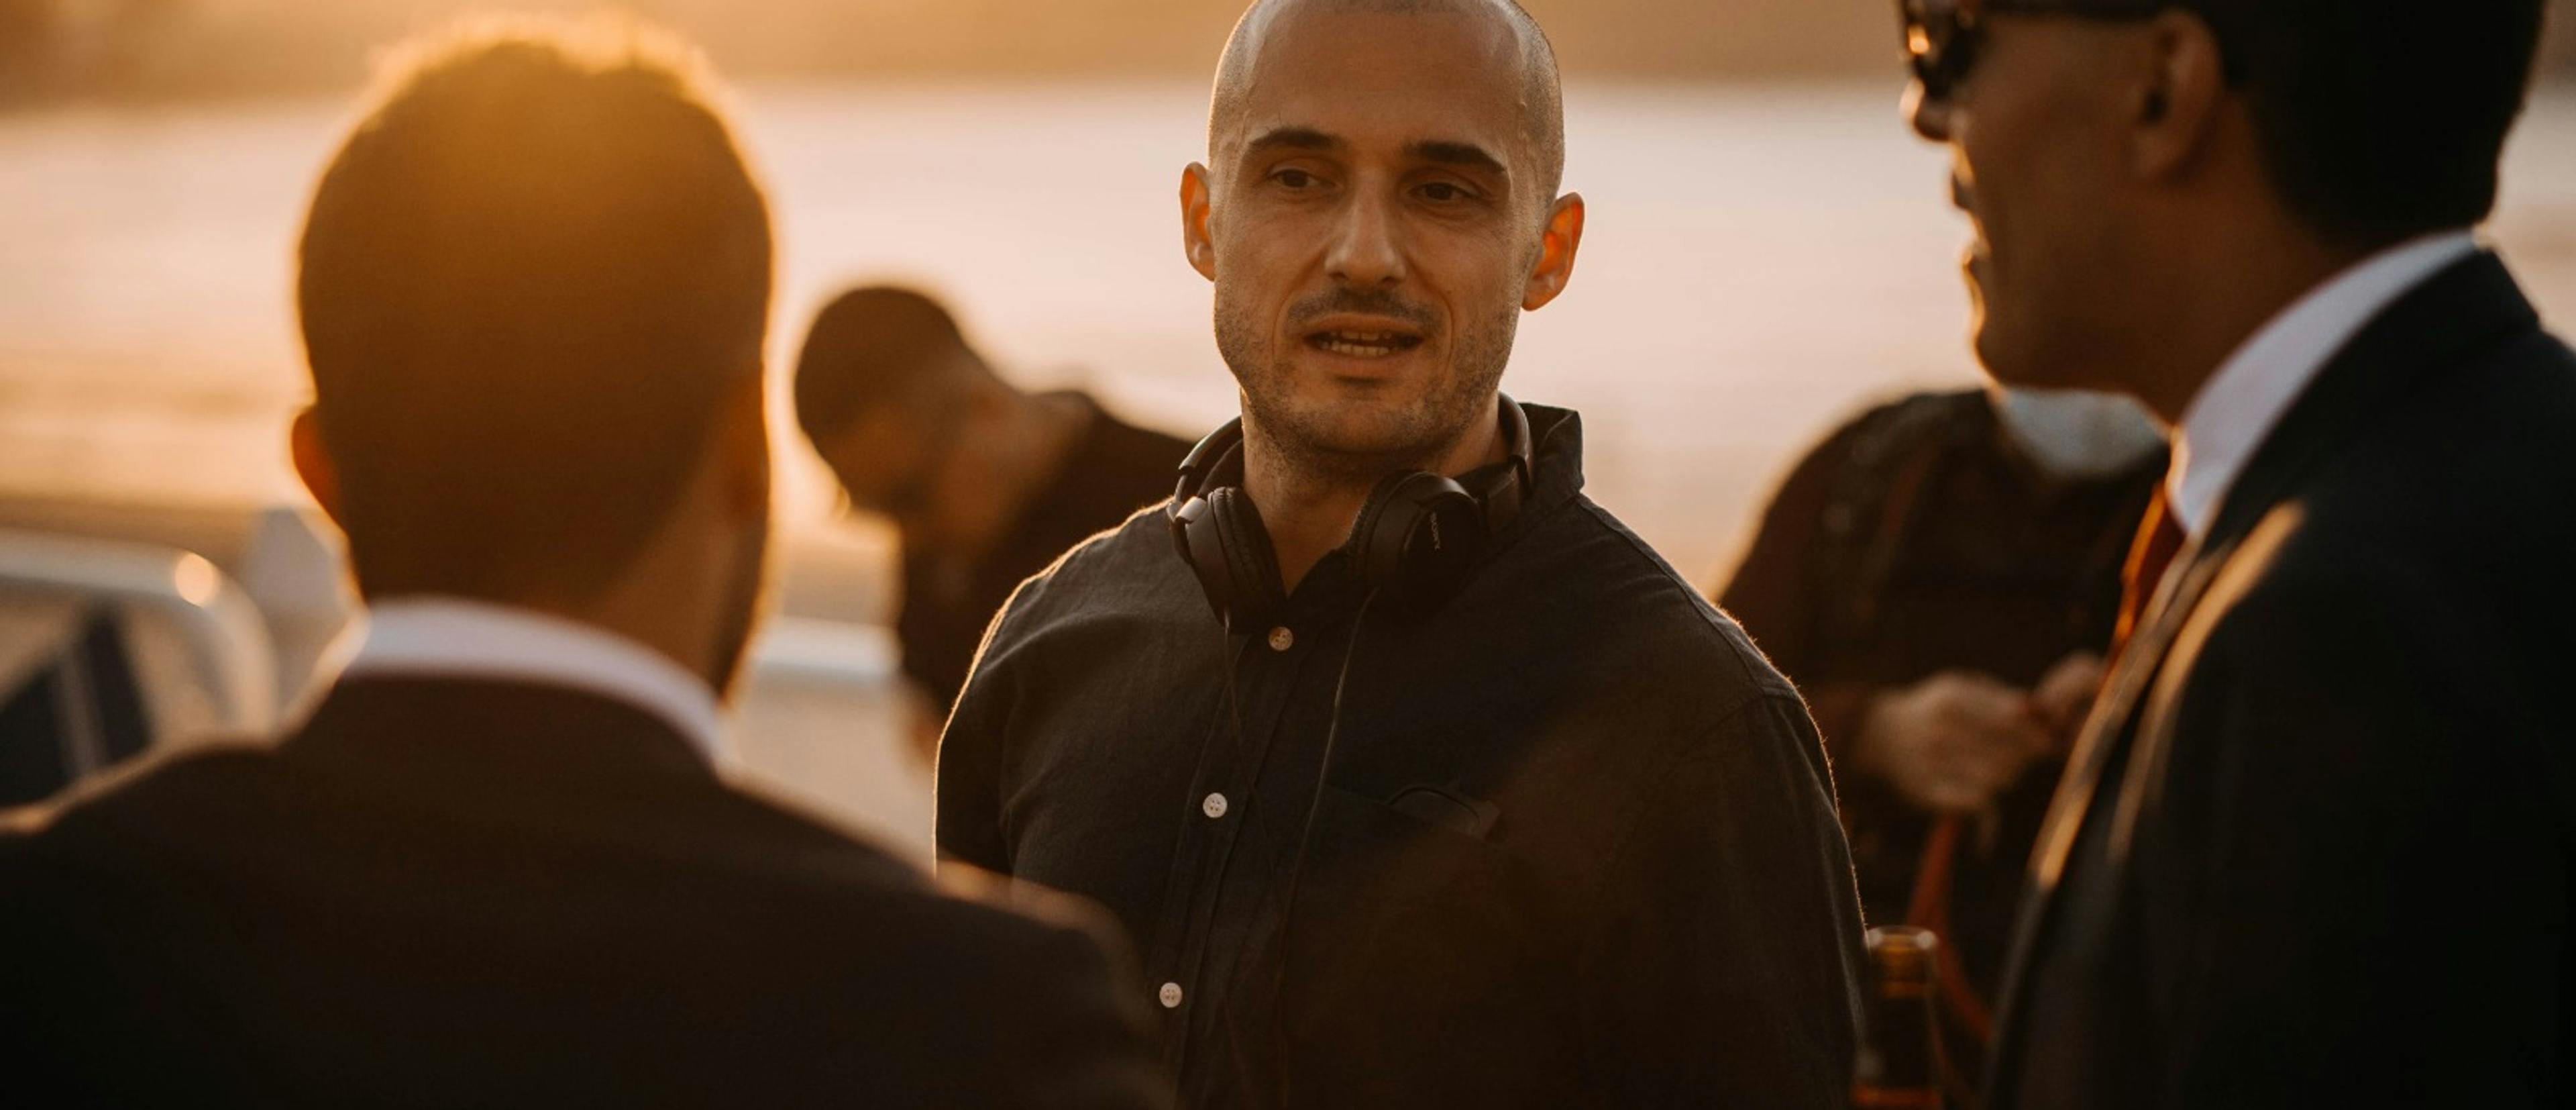 El director asturiano Diego Llorente, durante el rodaje de su película 'Notas sobre un verano'